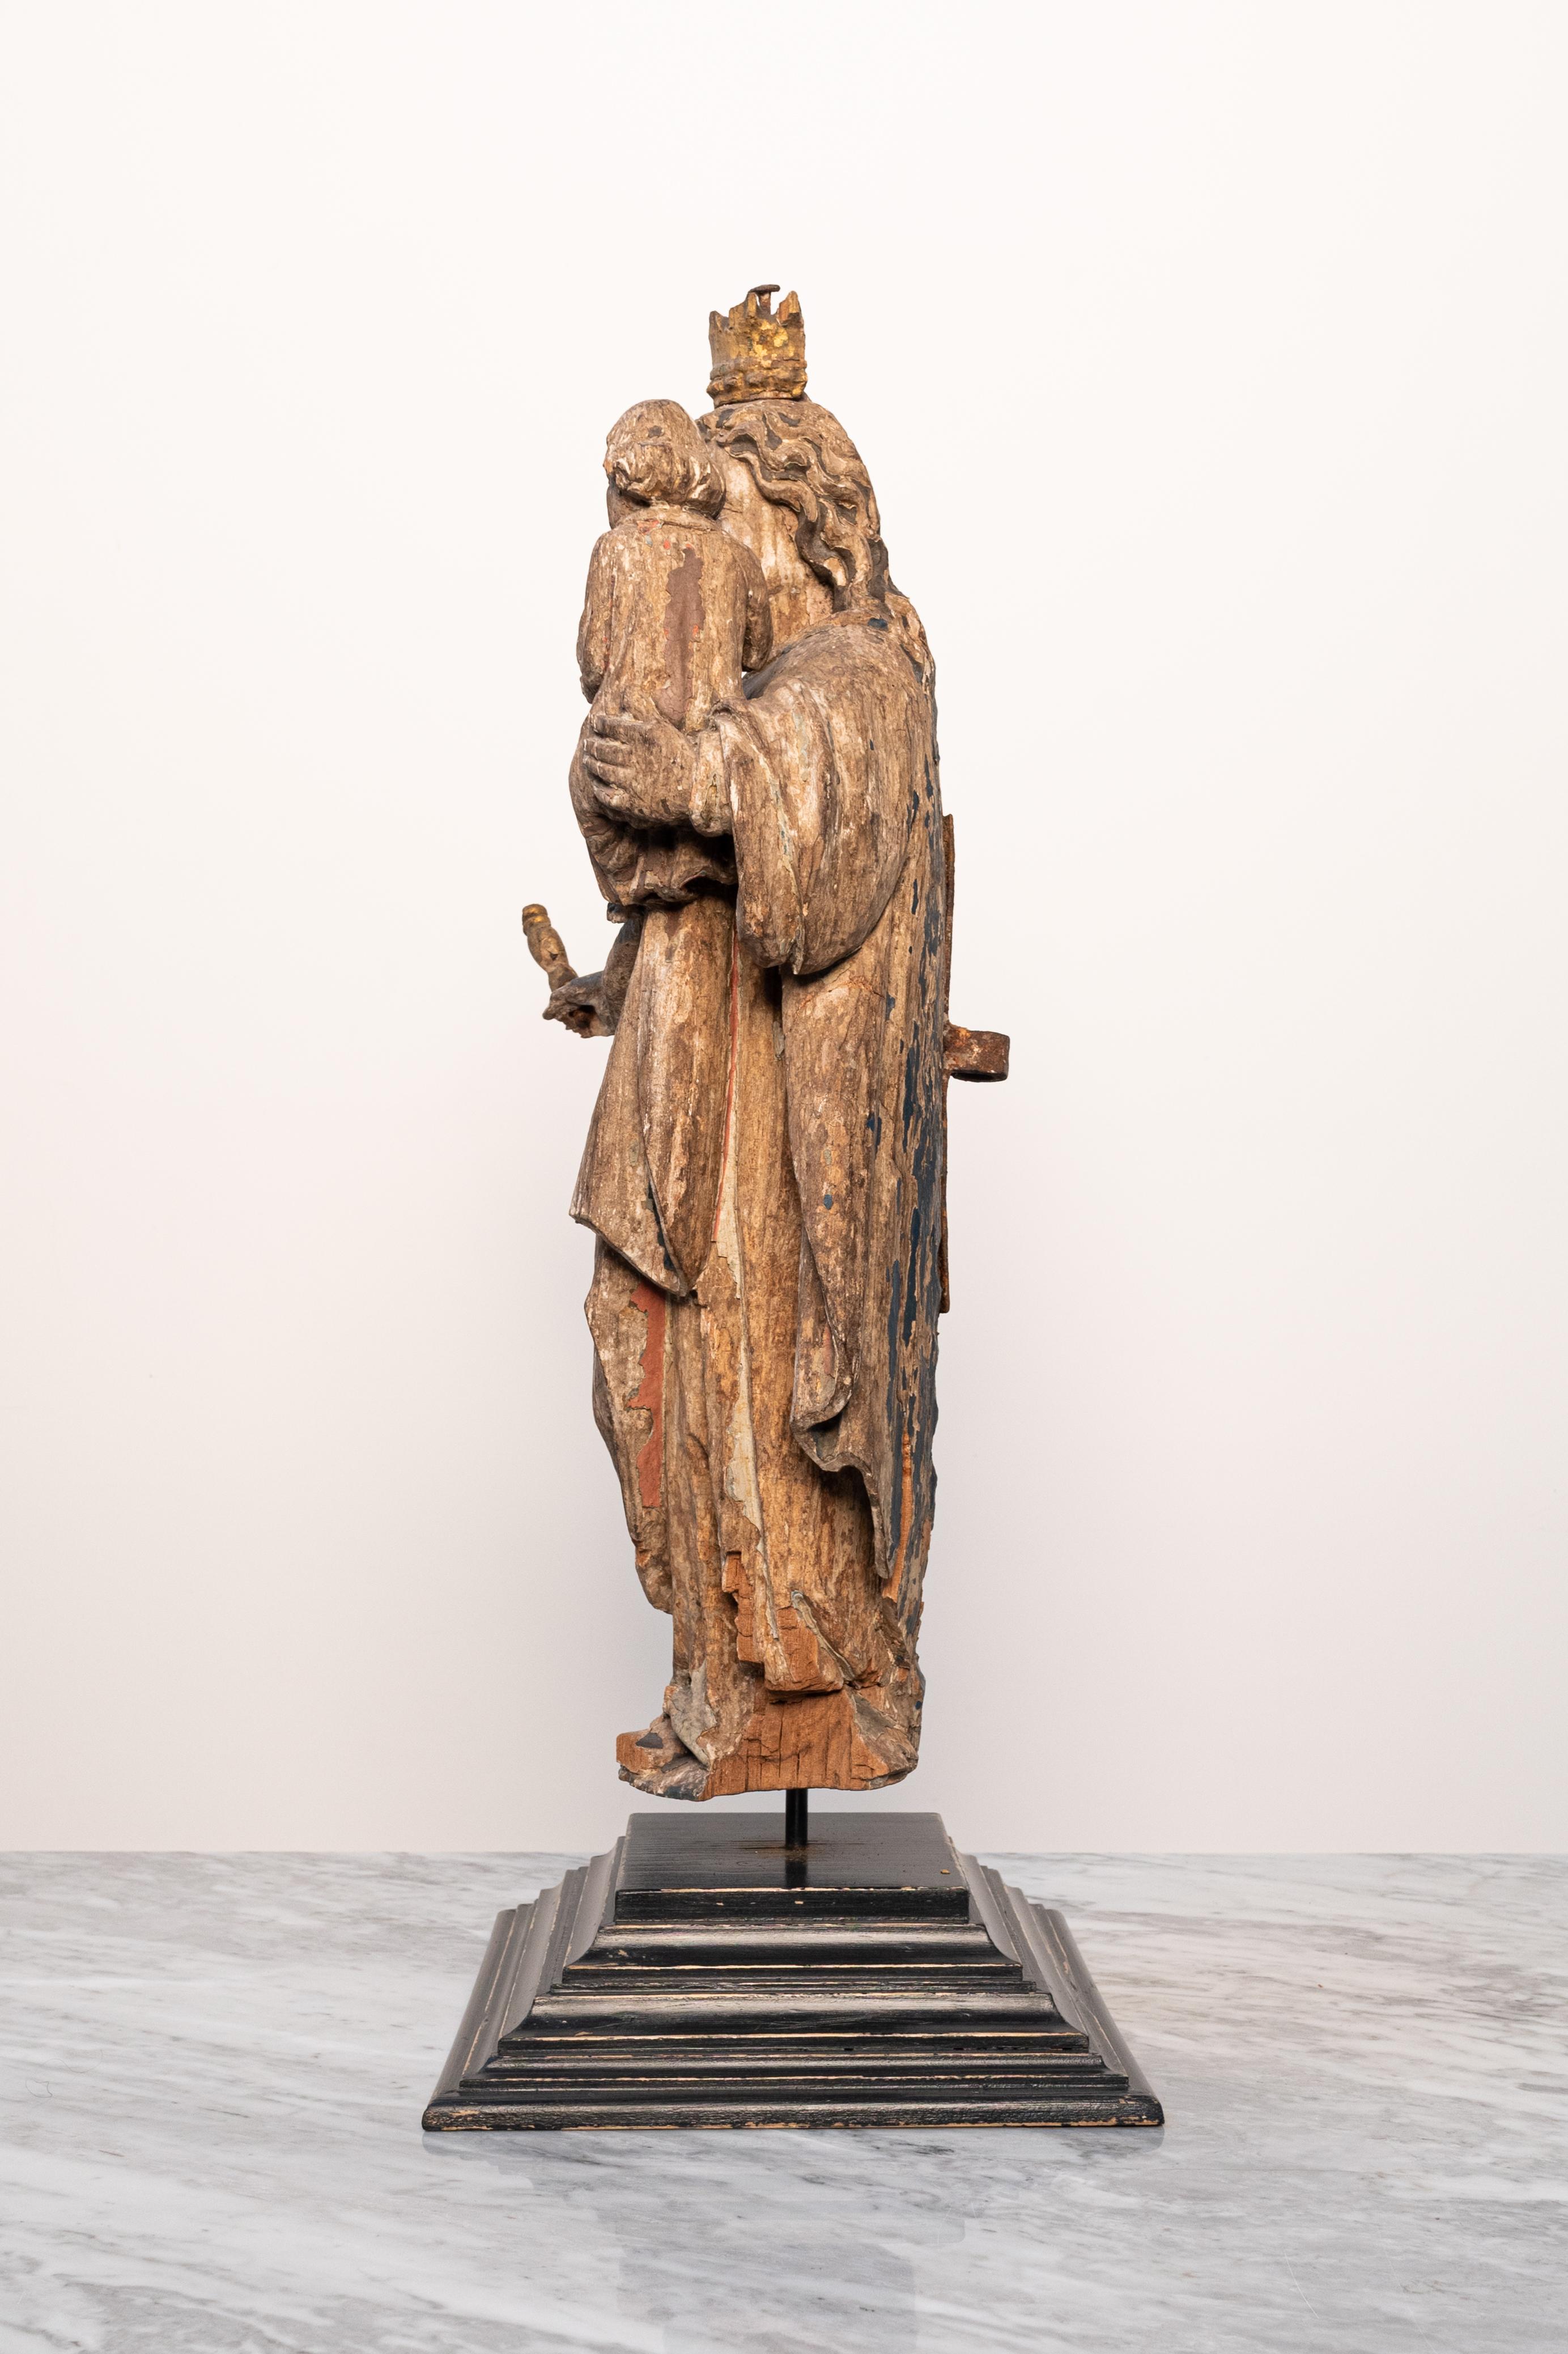 Cette statue en bois polychrome de la Vierge Marie, sculptée à la main au XVIe siècle, provient d'une église de Saint-Nicolas, en Belgique (Europe), et a été achetée directement au sacristain de l'église. 

Elle est fabriquée en bois de noyer et son